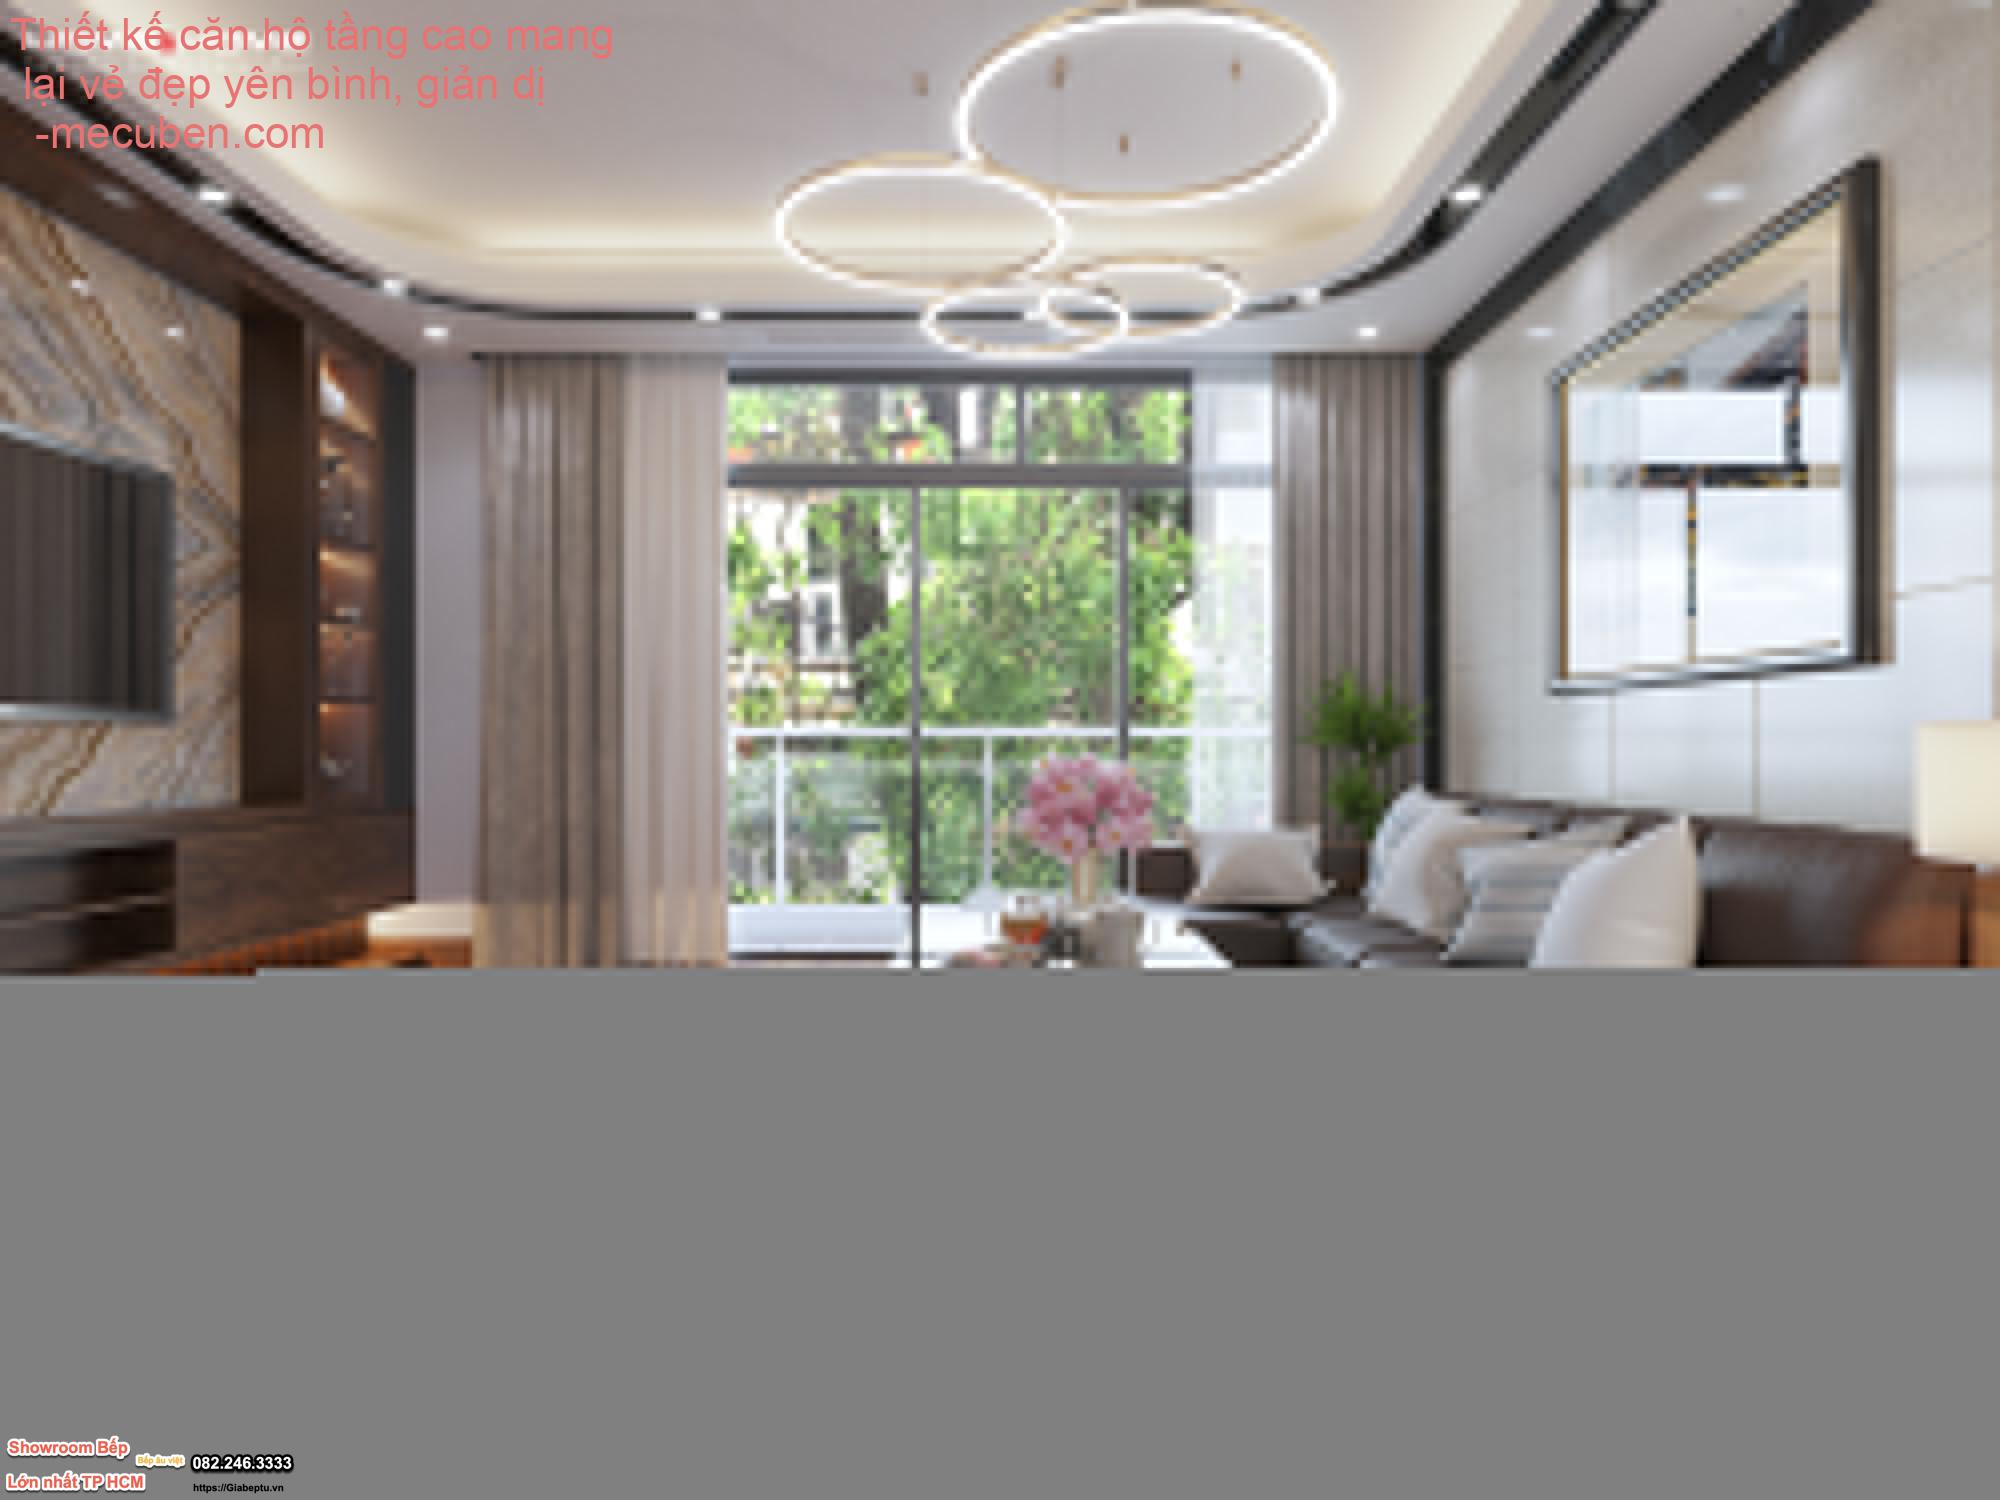 Thiết kế căn hộ tầng cao mang lại vẻ đẹp yên bình, giản dị 